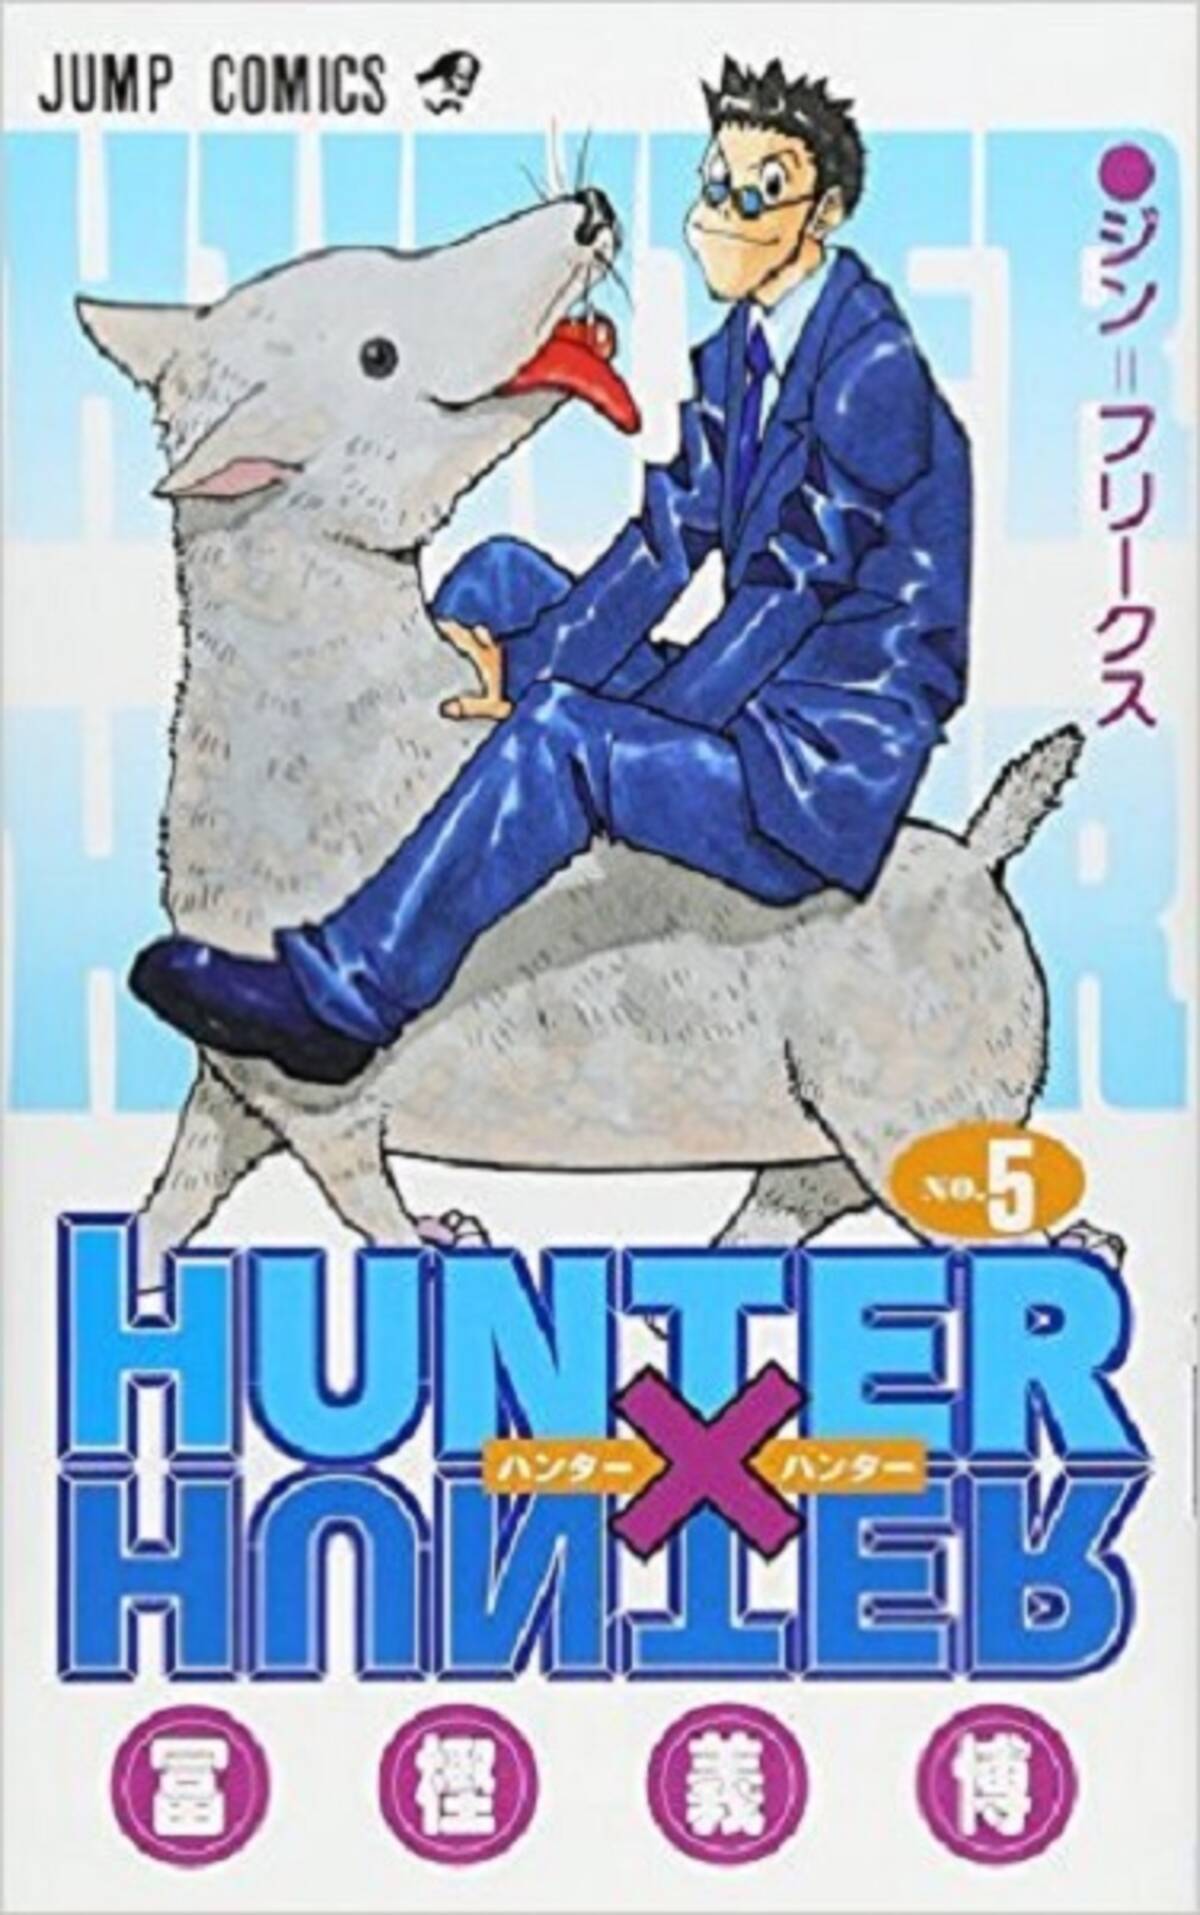 Hunter Hunter 5巻を振り返る 合格講習会でハンゾーが微妙に席を移っていた エキサイトニュース